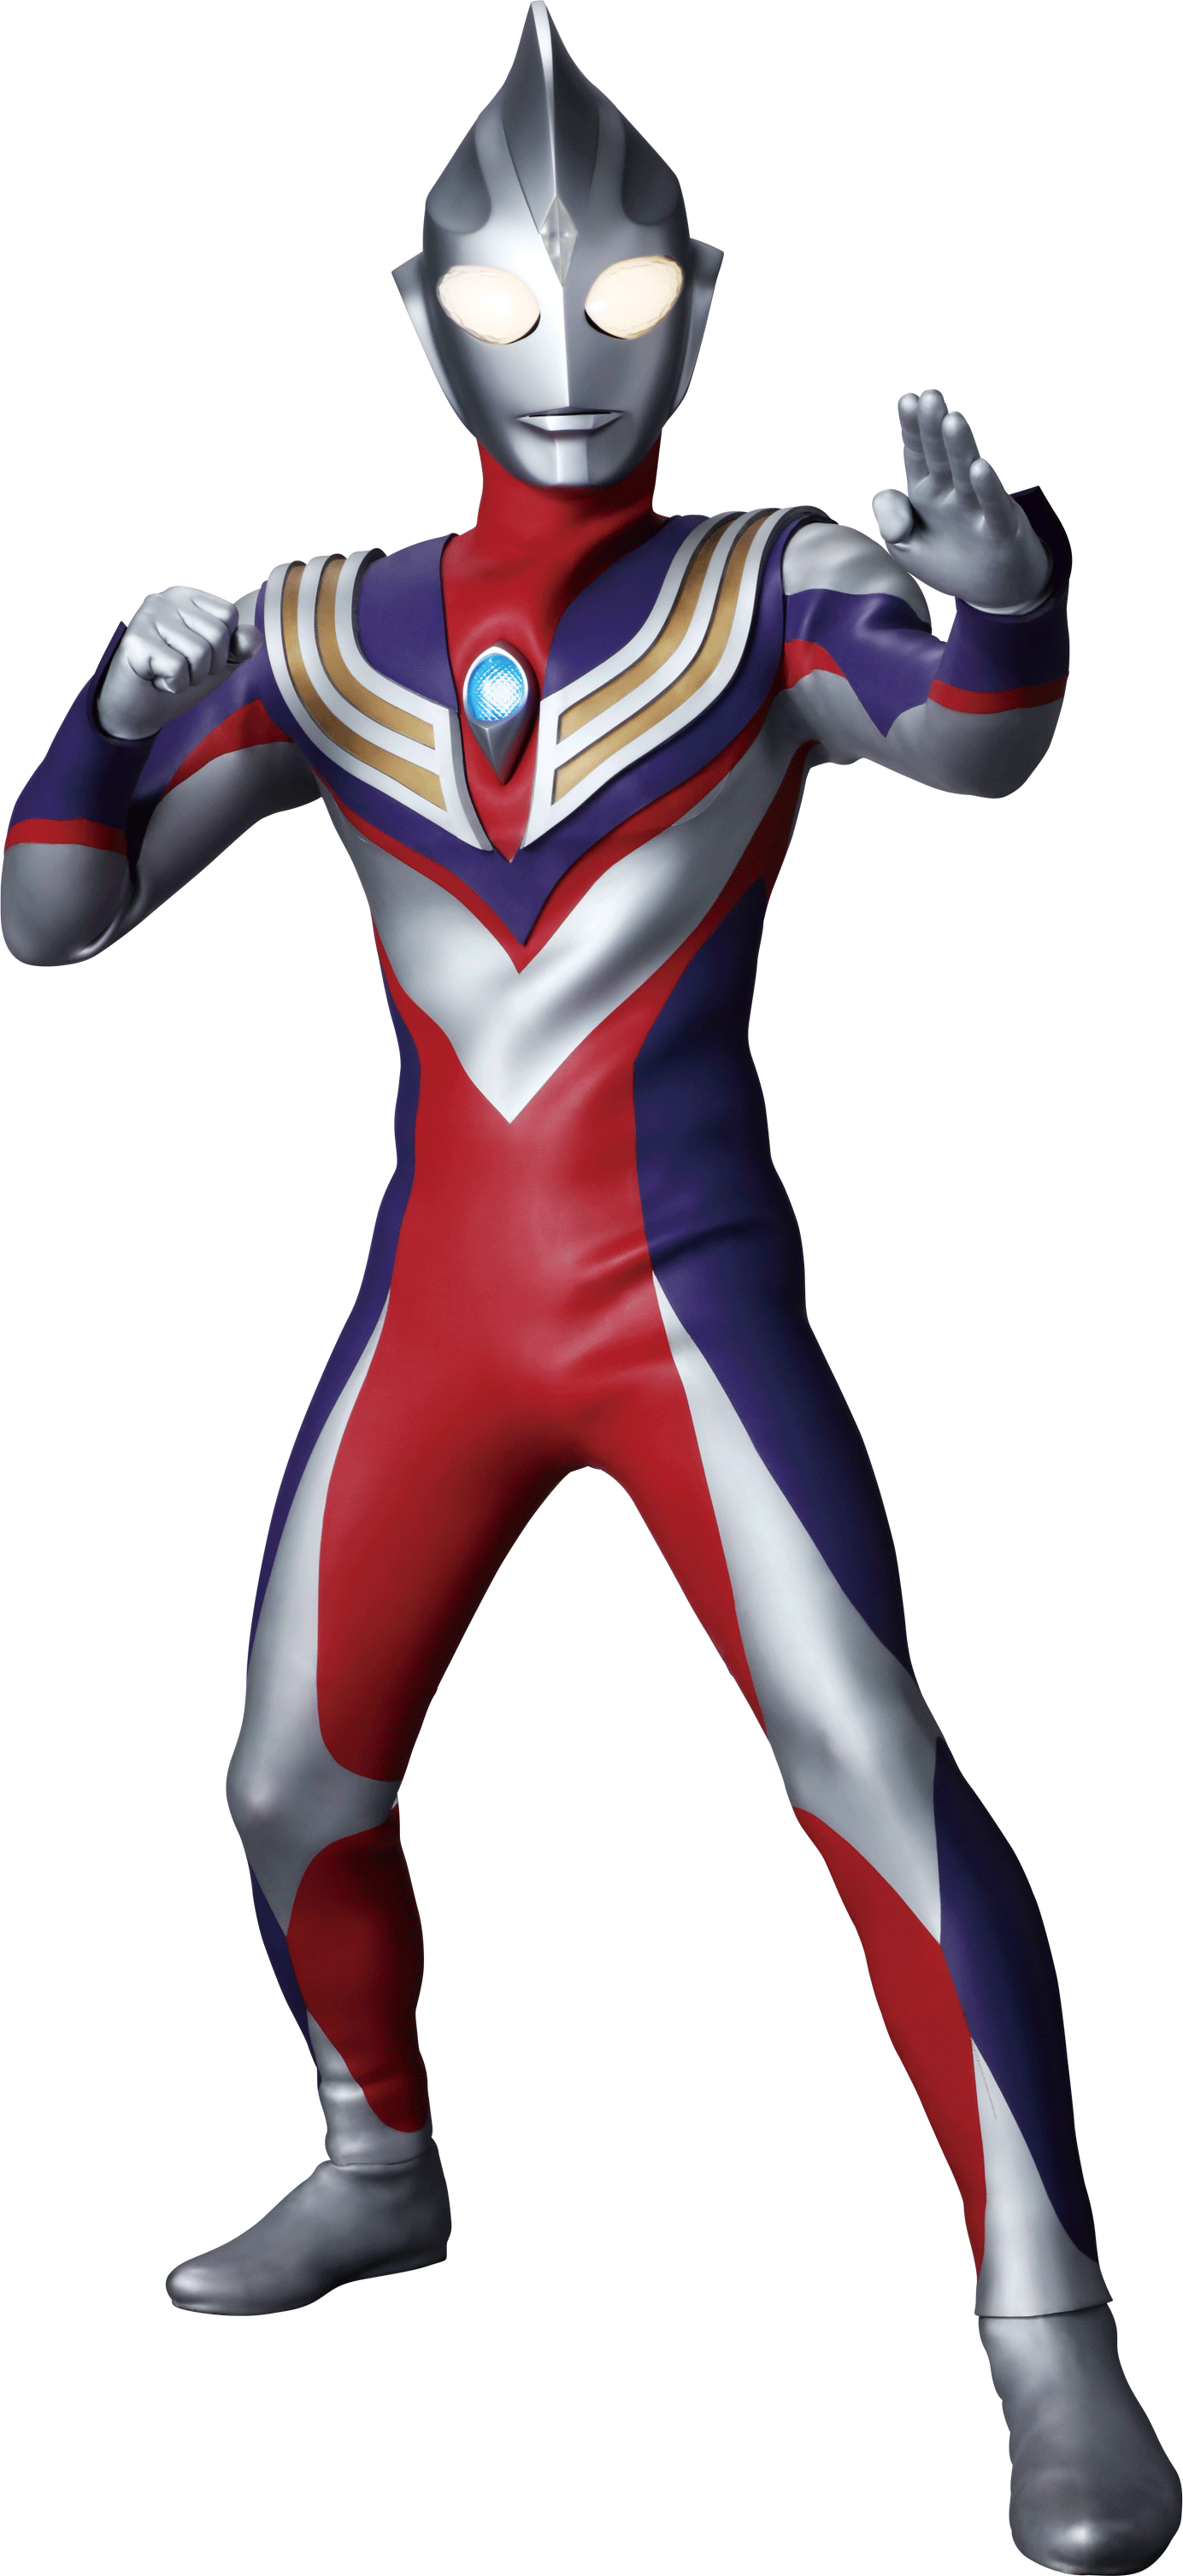 Ultraman Tiga lại trở lại chiến đấu để bảo vệ Trái Đất trong một hình ảnh ấn tượng. Bạn đừng bỏ lỡ việc xem hình và cảm nhận sức mạnh của siêu anh hùng đến từ Nhật Bản này nhé!